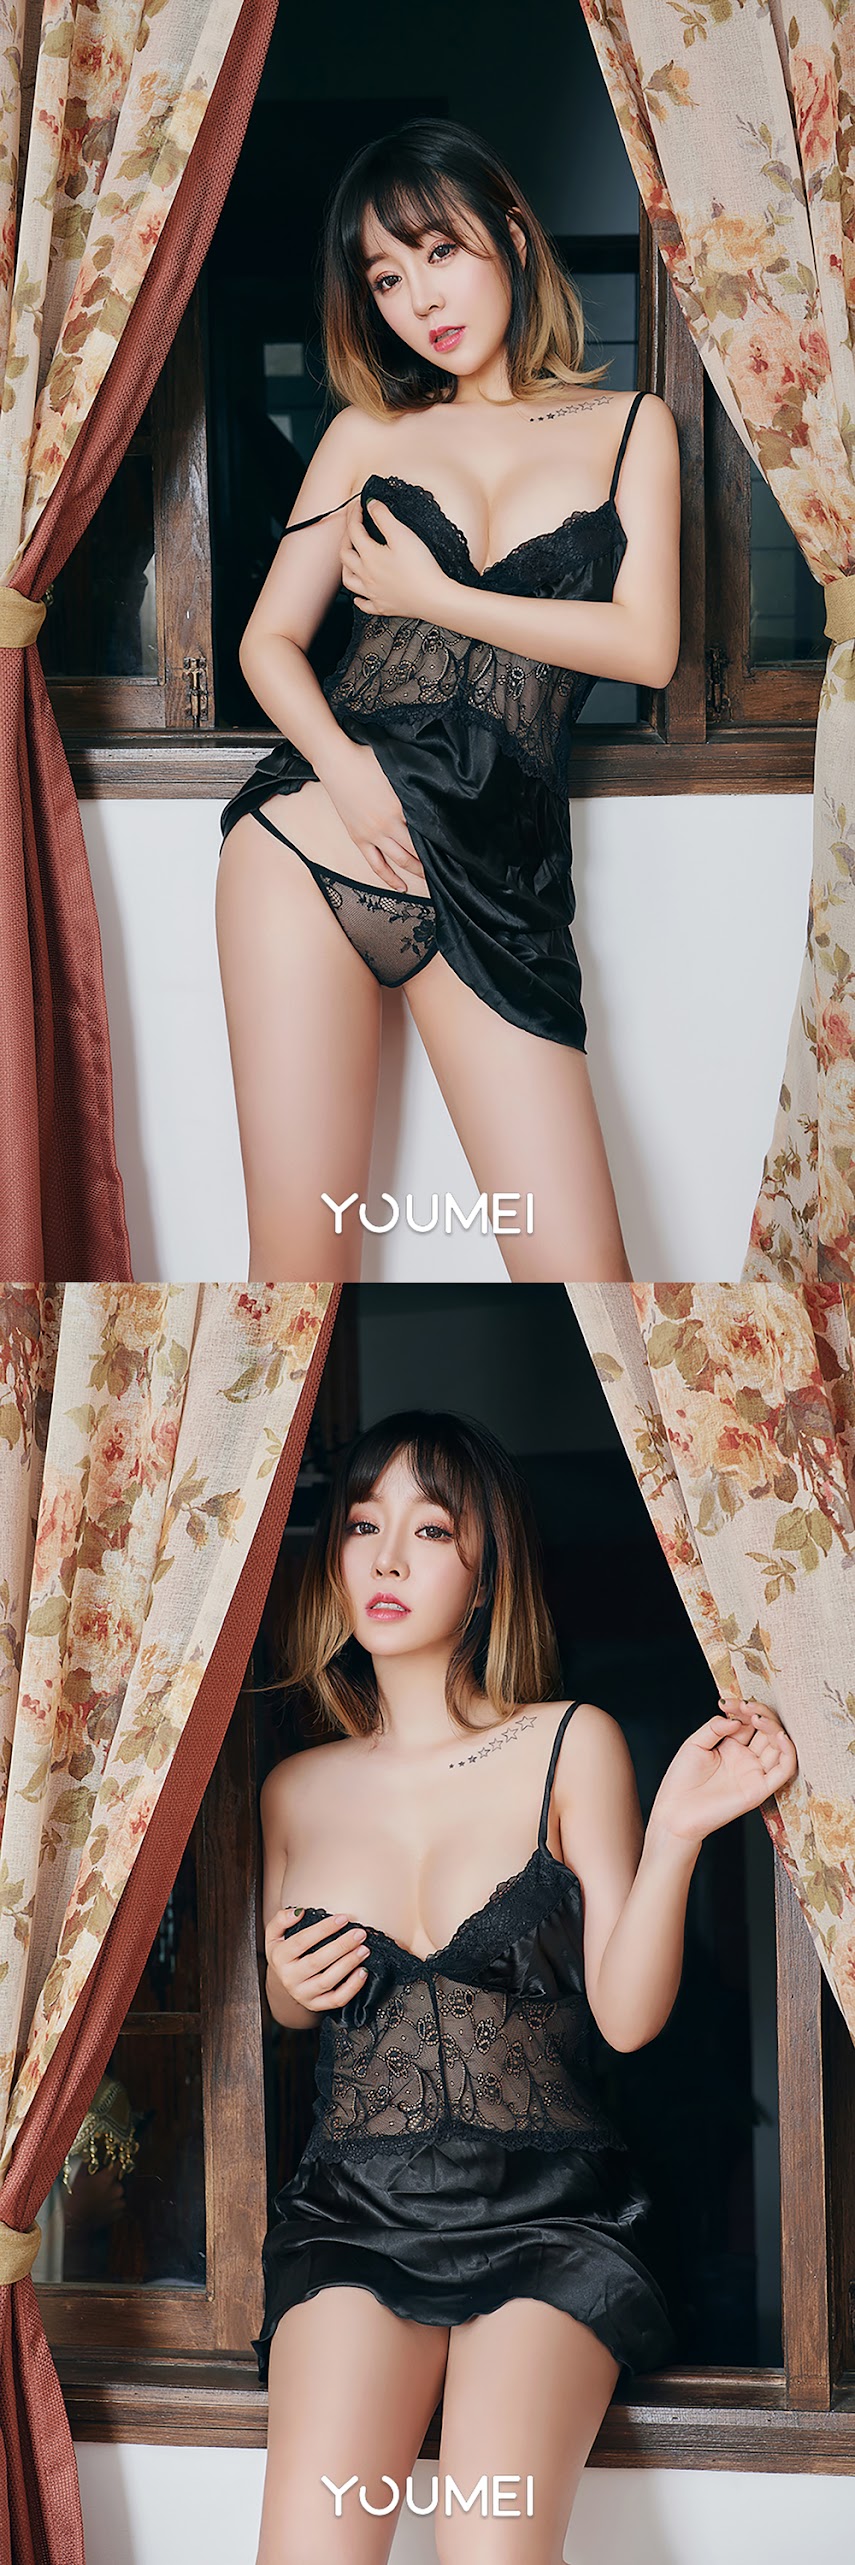 YouMei 2018.12.29 Vol.099 - idols